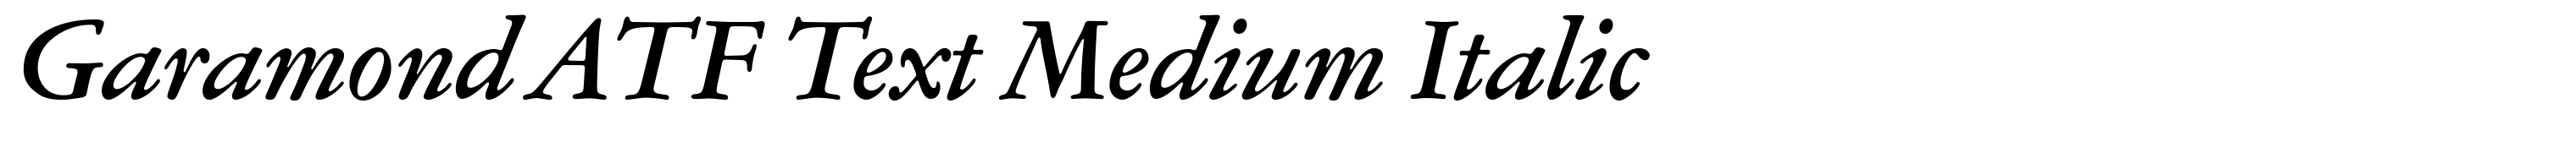 Garamond ATF Text Medium Italic